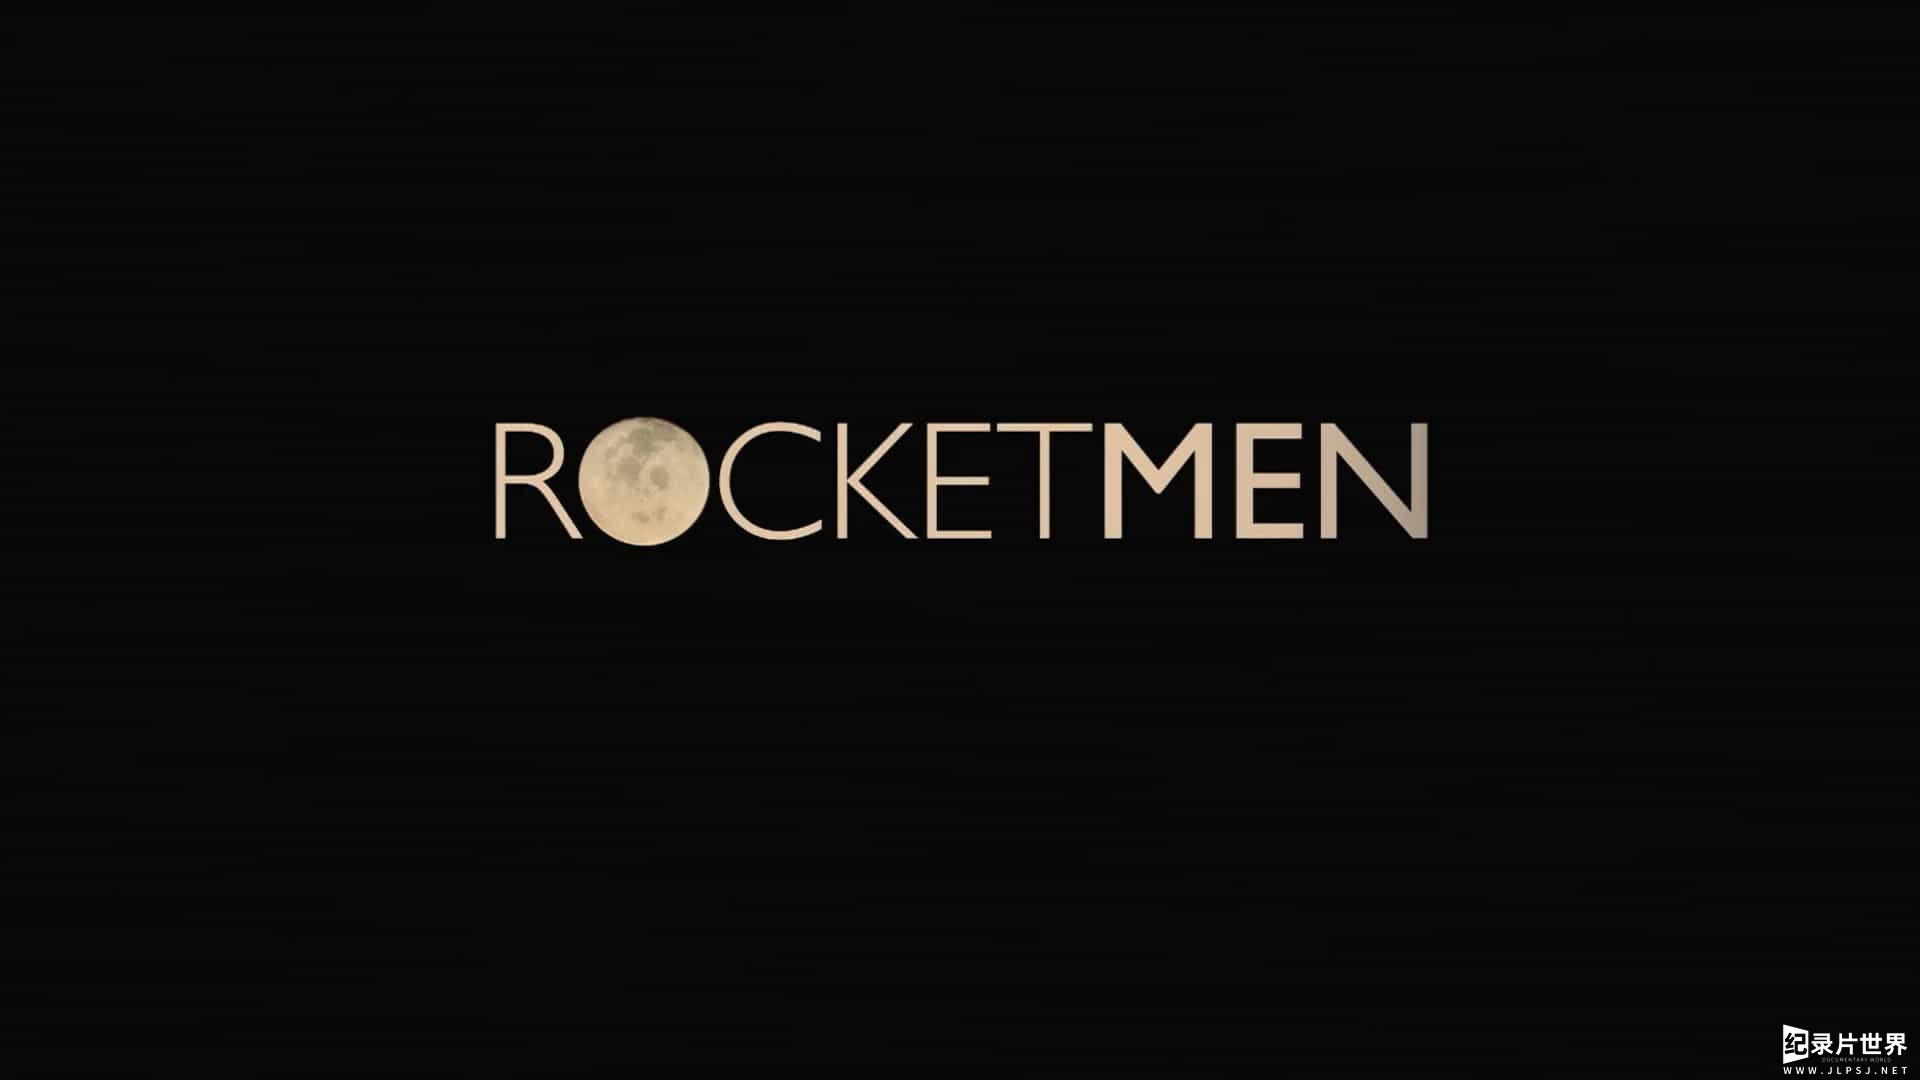 BBC纪录片《火箭人 Rocket Men 2015》全1集 